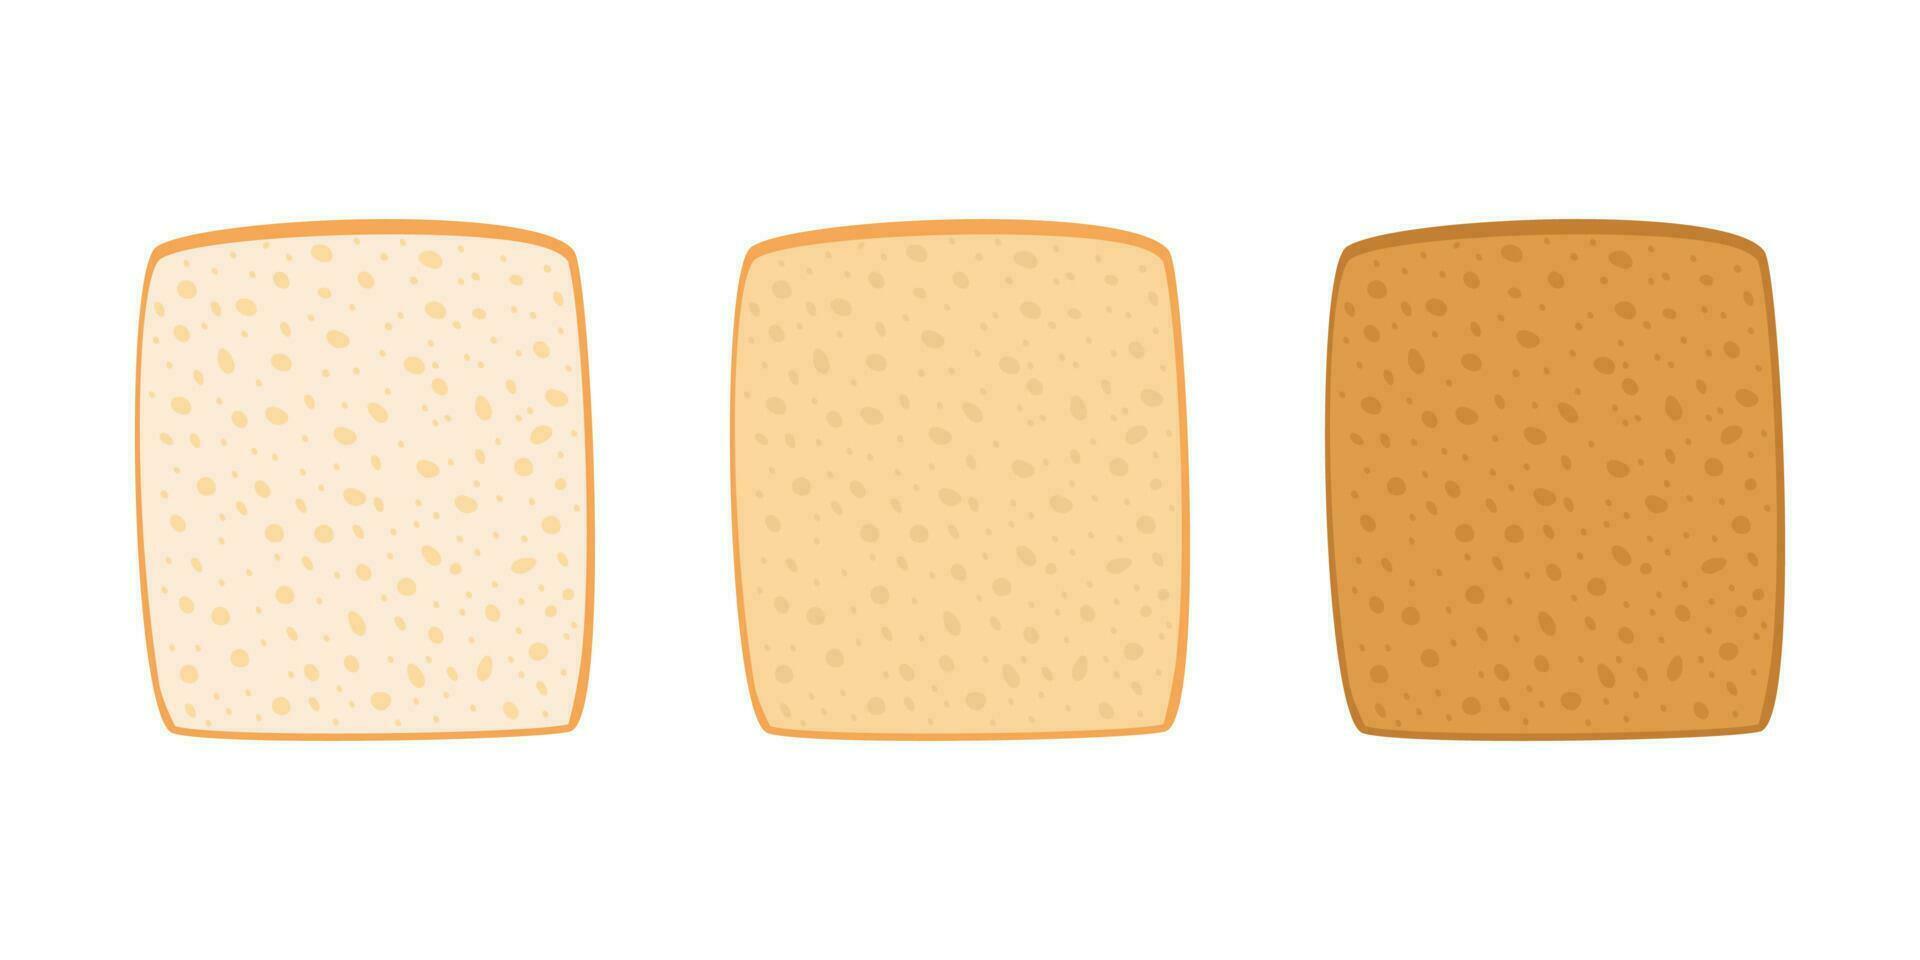 rostat bröd bröd skära skiva från vete uppsättning. rostat bit bageri mat. skivor av rostat bröd bröd med varierande grader av skålar. fyrkant limpa, vit bröd. vektor illustration